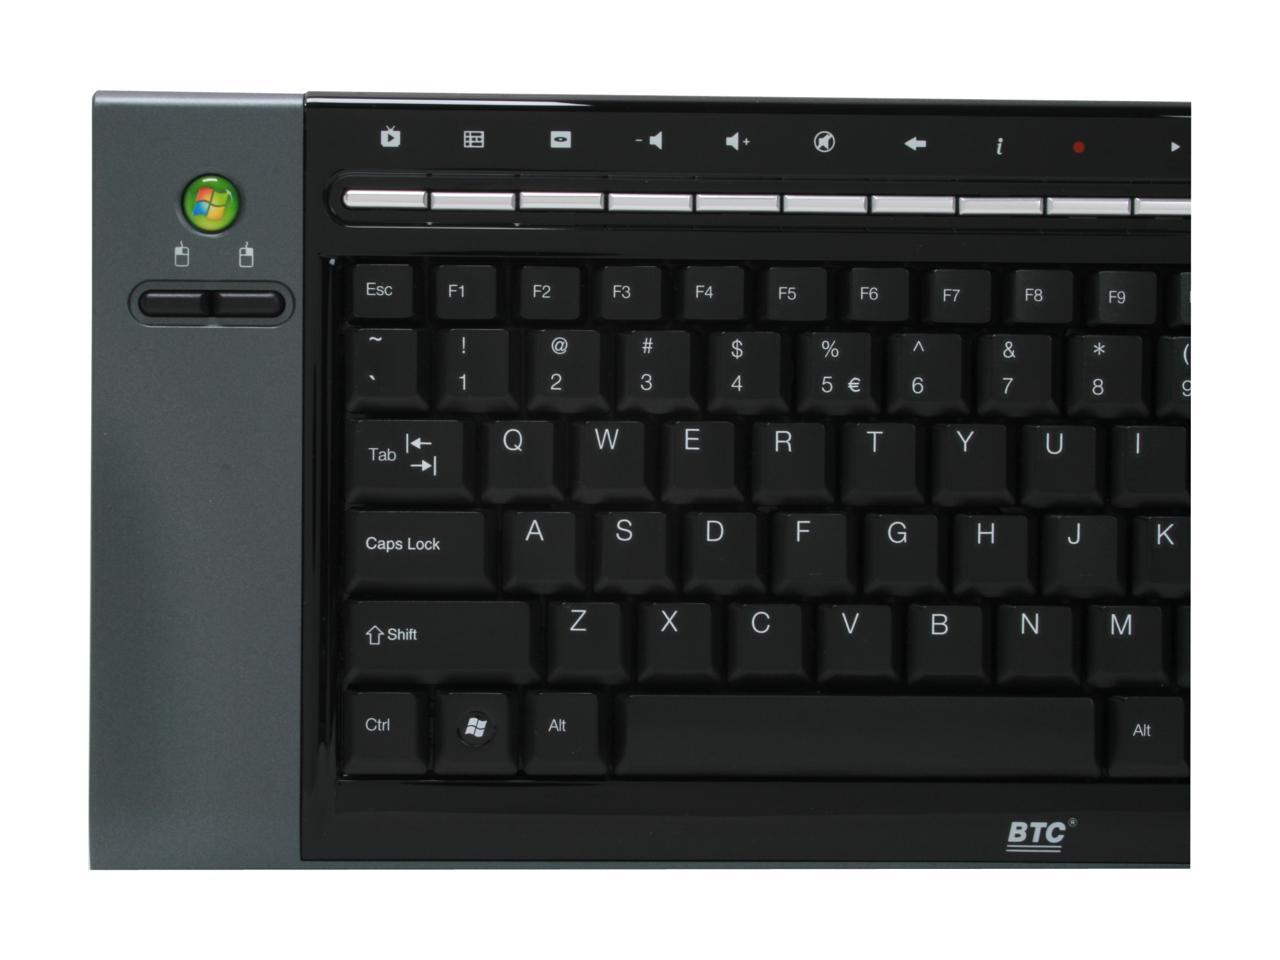 btc btc-06 2.4ghz wireless keyboard